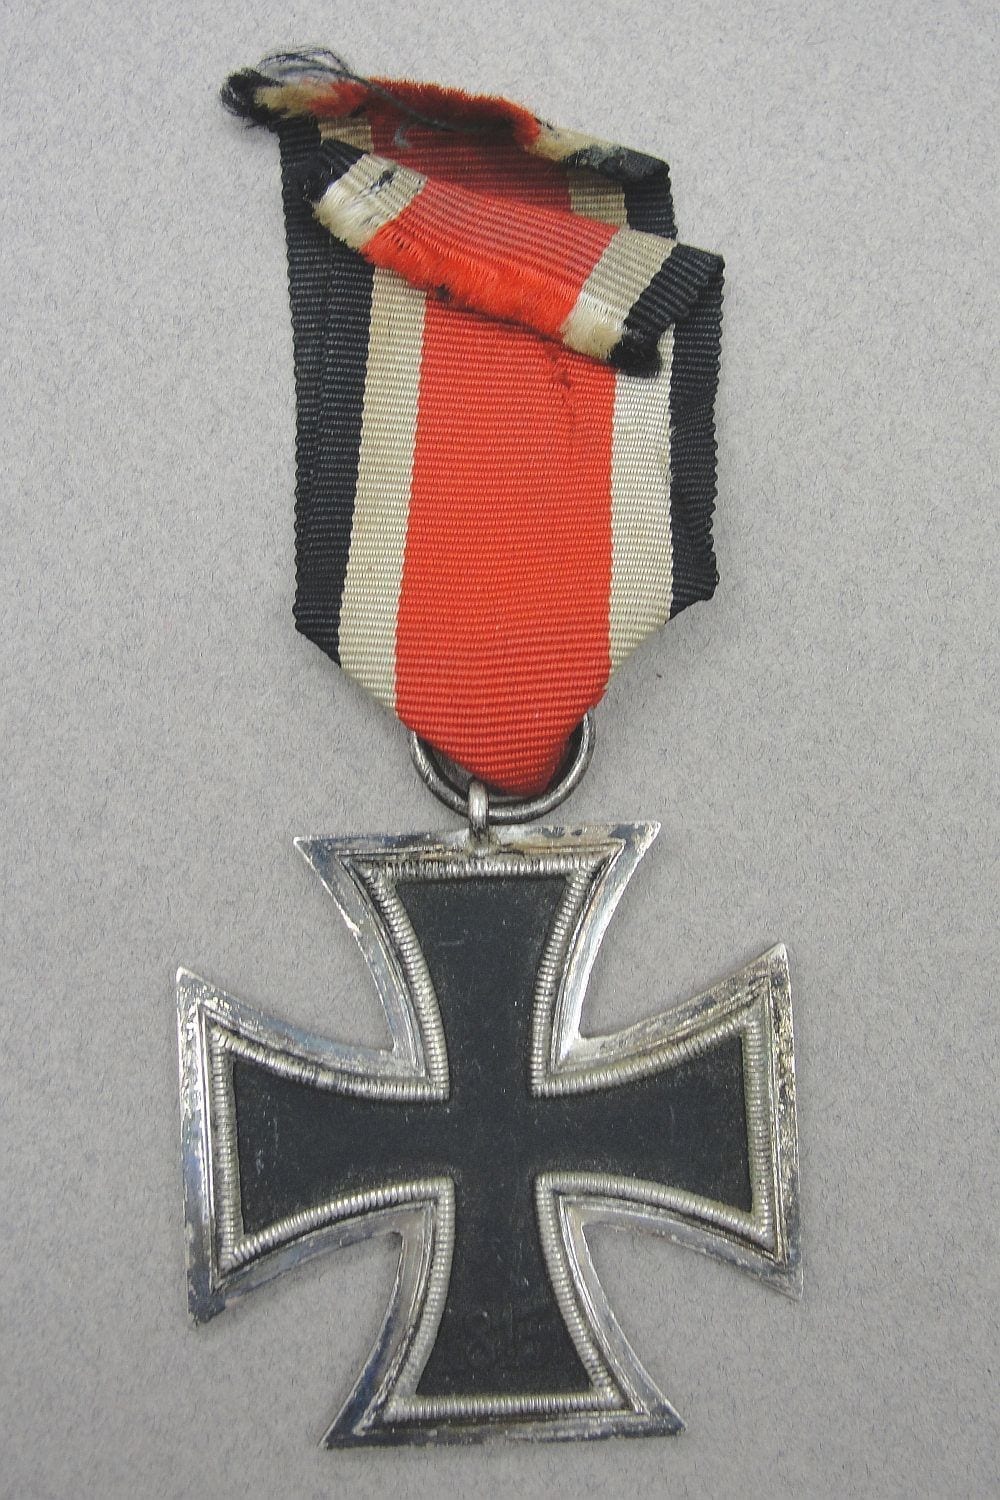 1939 Iron Cross Second Class by "25" - Arbeitsgemeinschaft der Gravur, Hanau